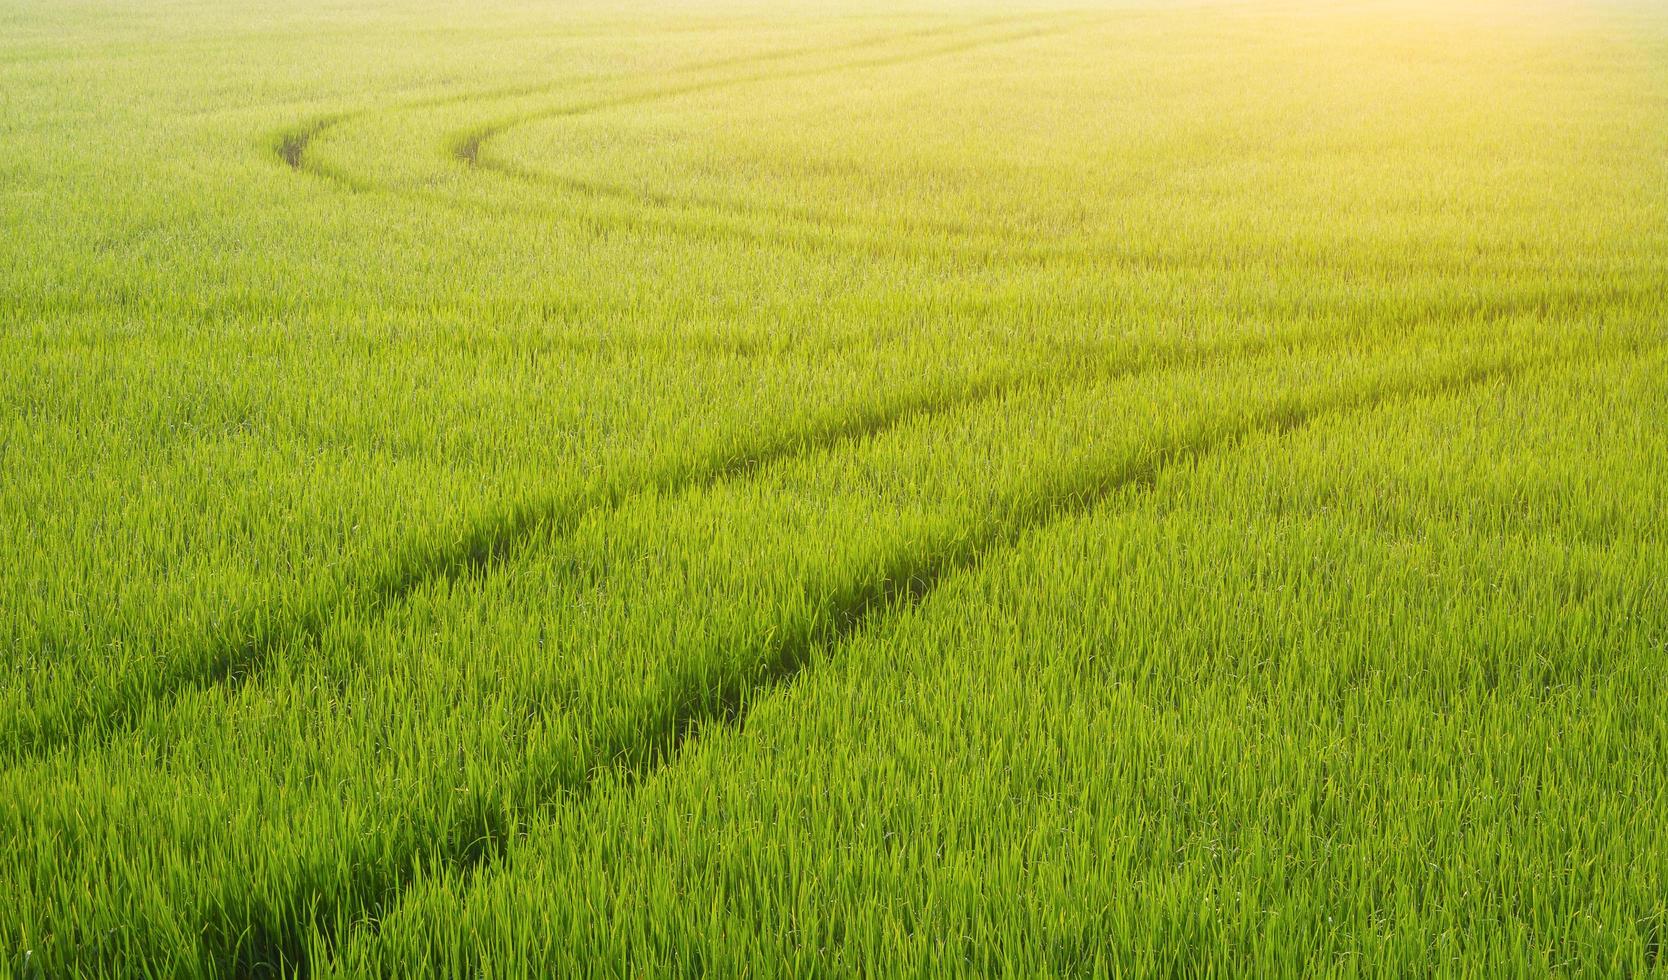 ochtend zacht zonlicht op het oppervlak van de curvebaan van de spuittractor na het spuiten van kunstmest in een groen rijstveld, landbouw en natuurlijke achtergrond foto